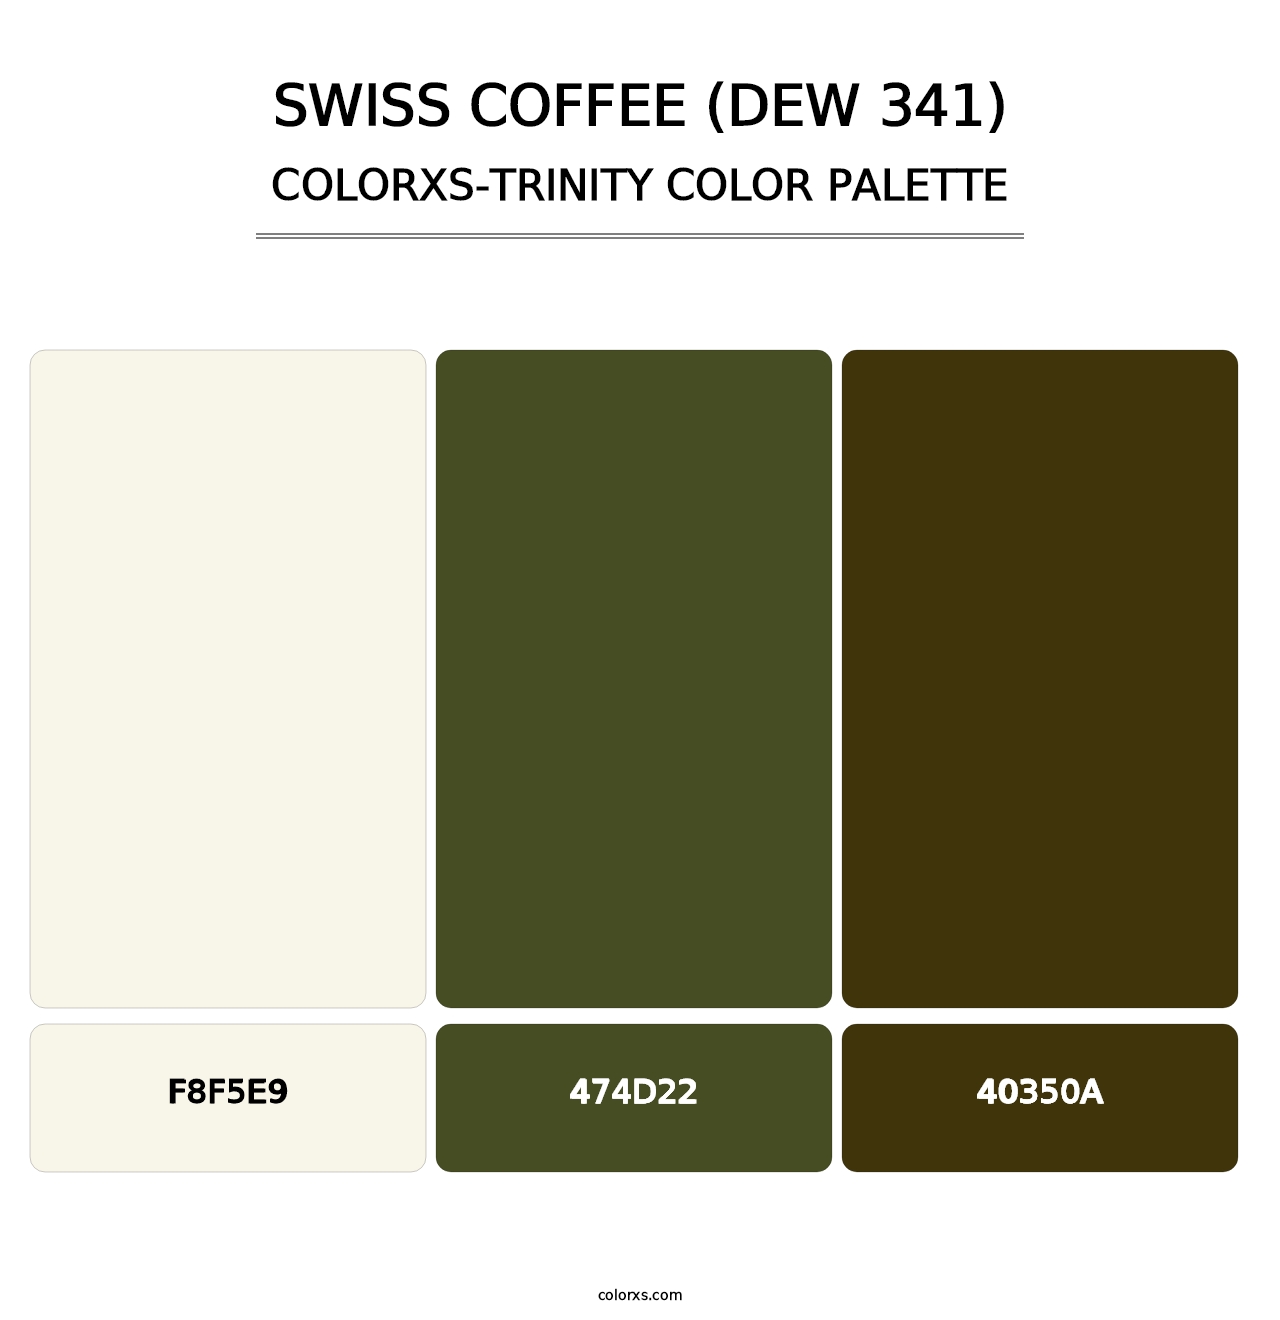 Swiss Coffee (DEW 341) - Colorxs Trinity Palette